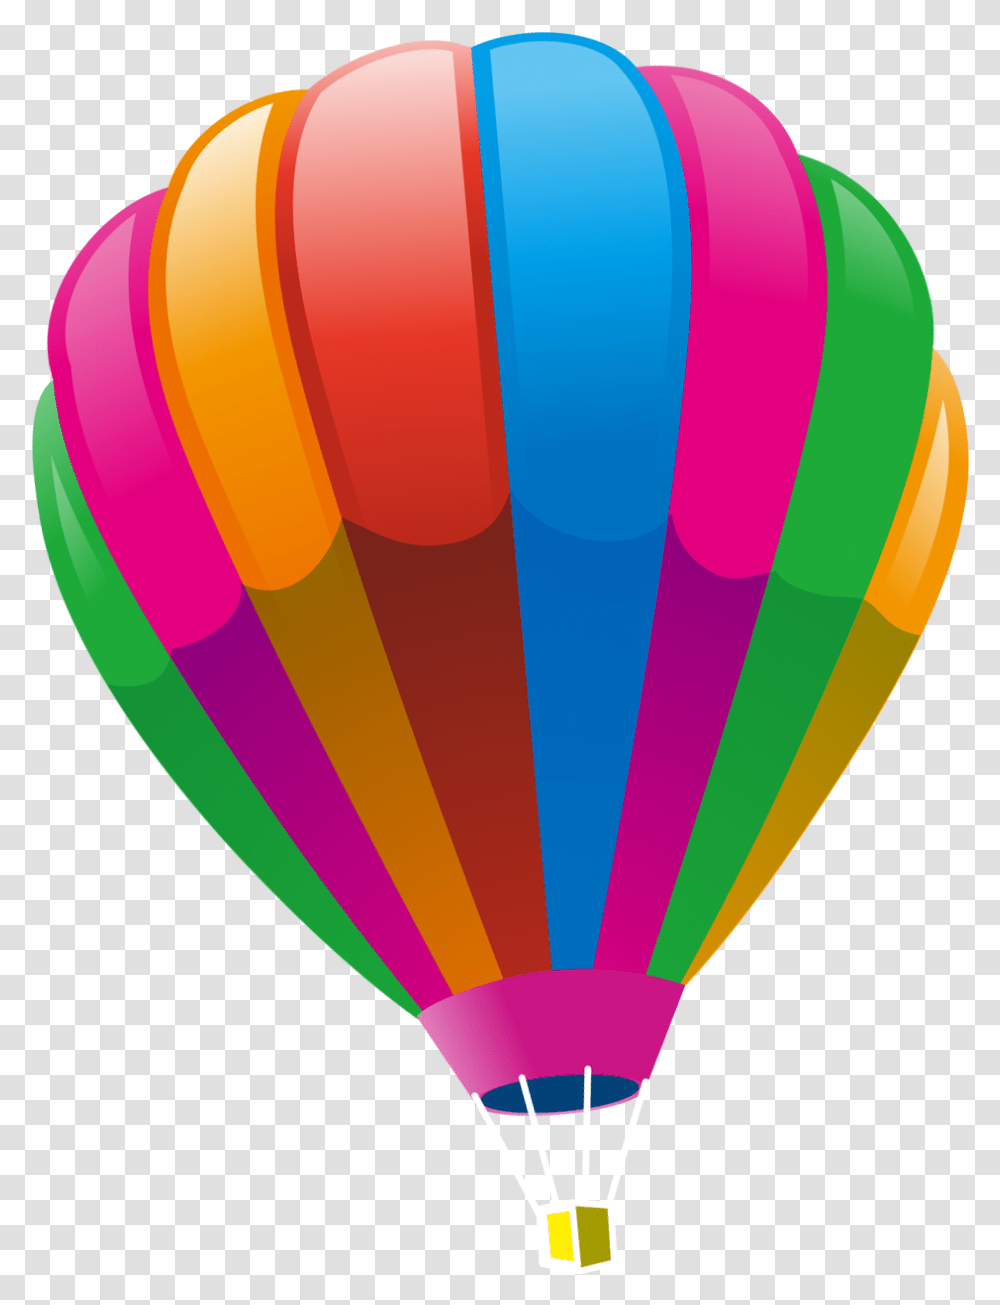 Hot Air Ballooning Hot Air Balloon, Aircraft, Vehicle, Transportation Transparent Png